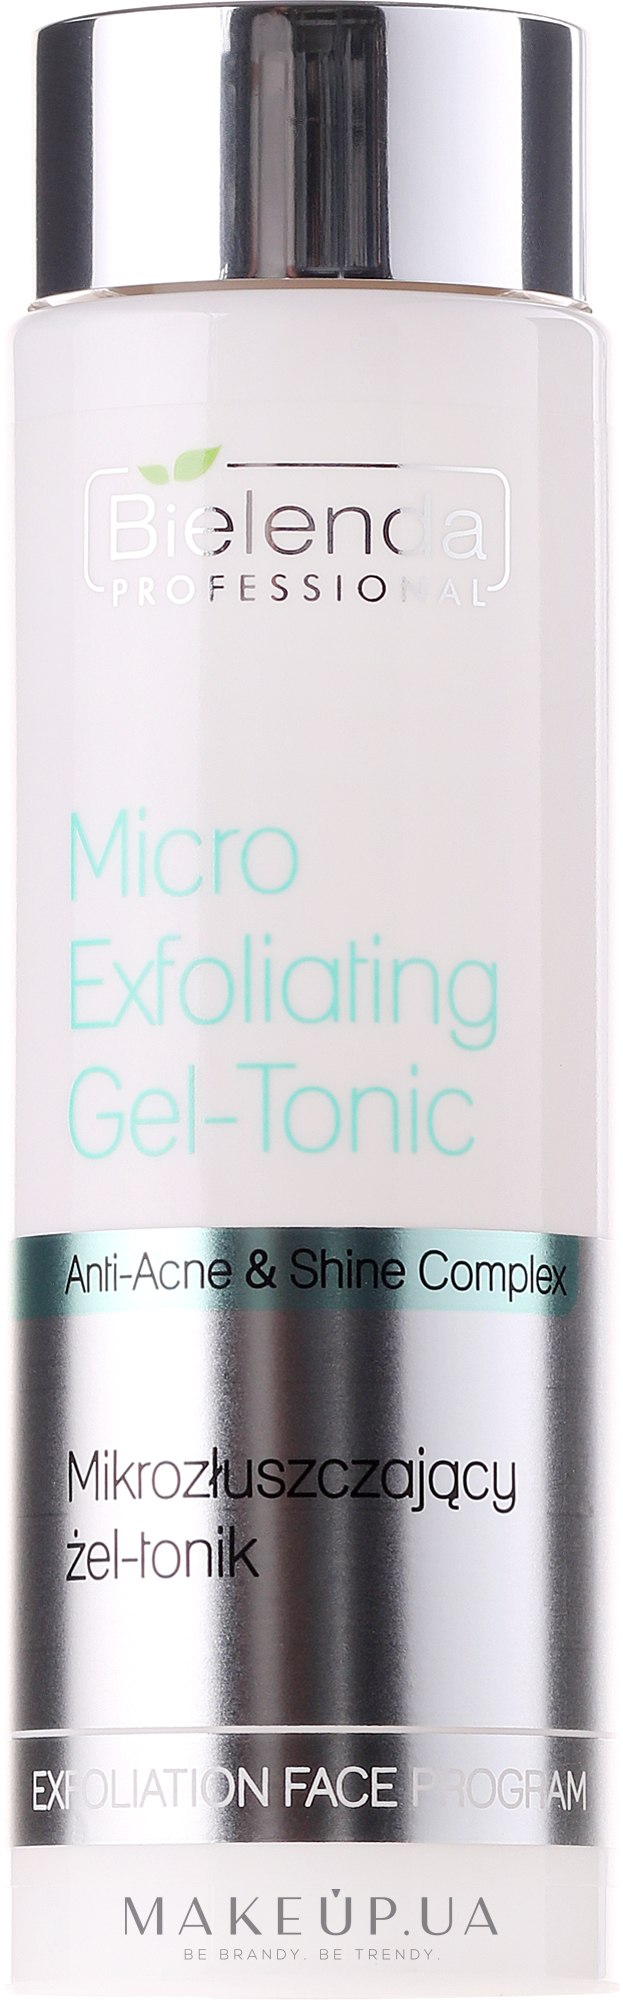 Мікровідлущувальний гель-тонік - Bielenda Professional Face Program Micro-Exfoliating Gel-Tonic — фото 200g